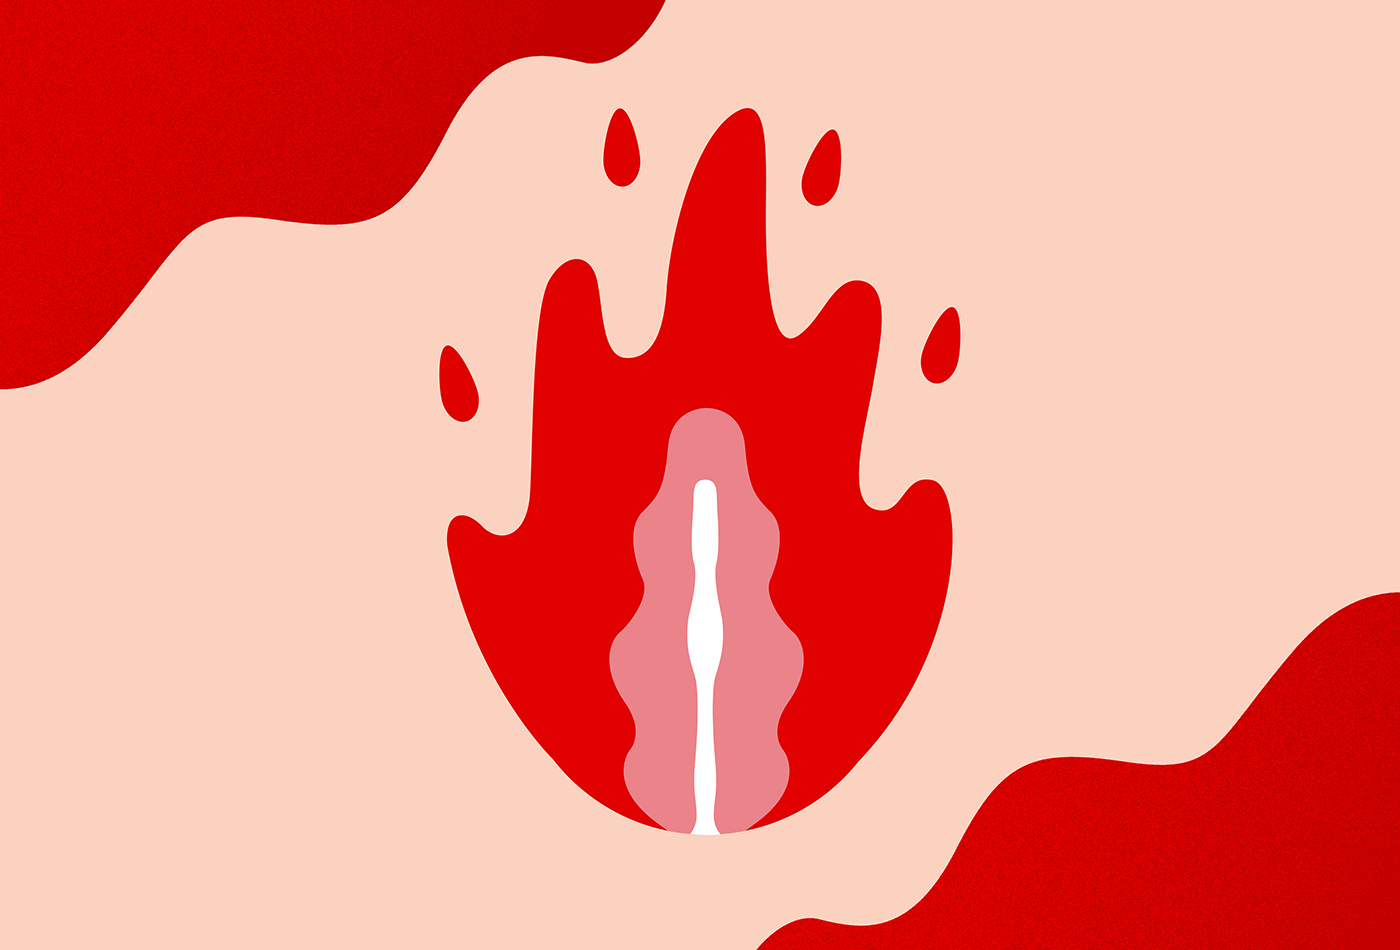 branding  color palette fanzine feminist graphic design  ILLUSTRATION  menstruation rebelde social social media